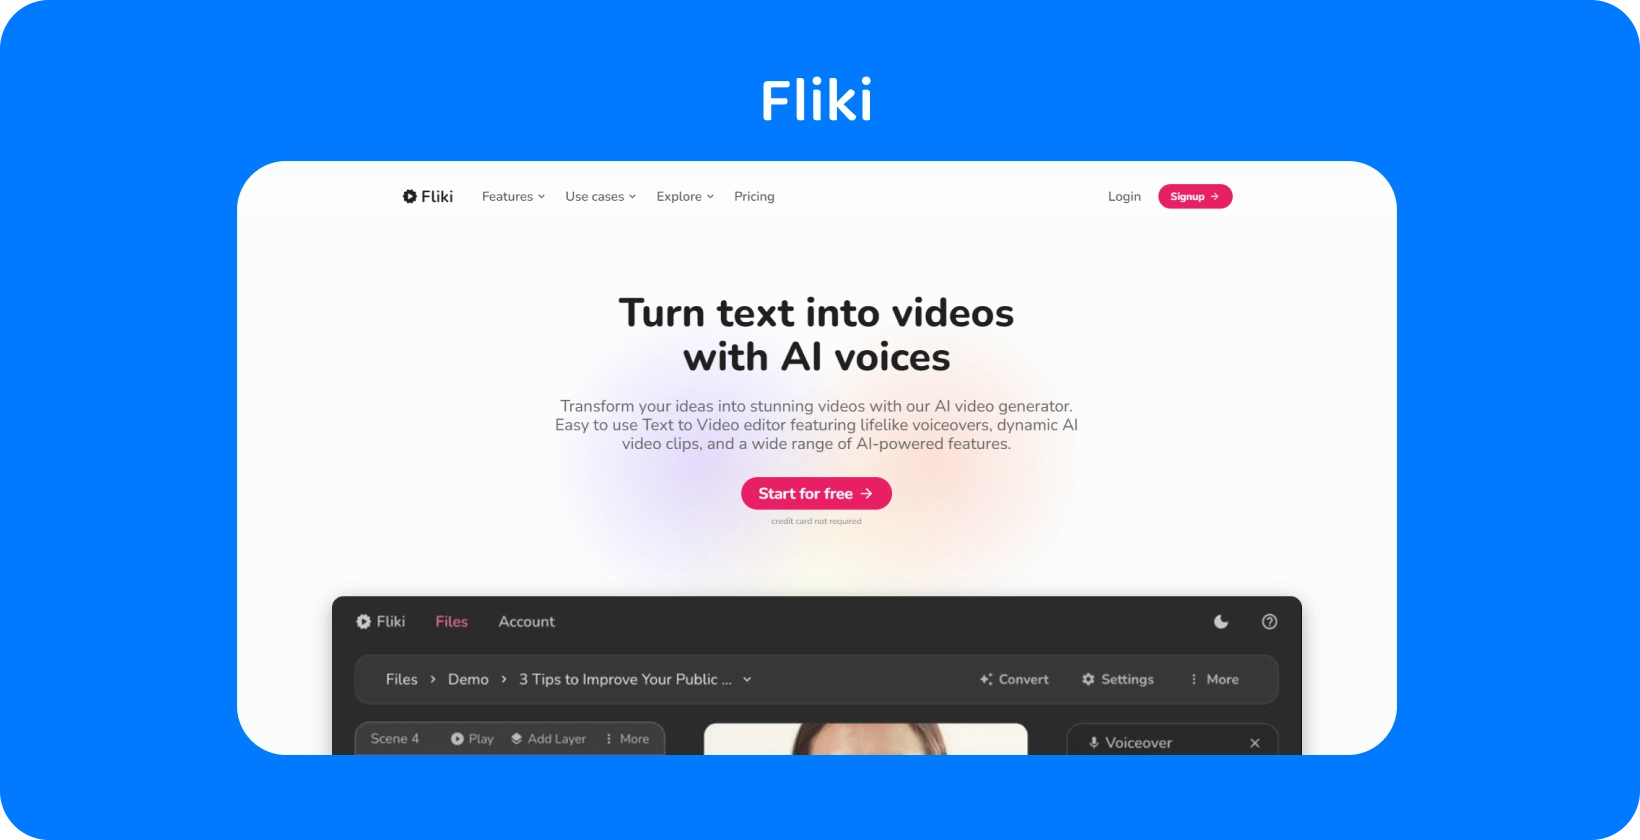 Pagina platformei Fliki arată cum să transformi textul în videoclipuri cu voci AI, oferind o experiență de editare text-to-video.